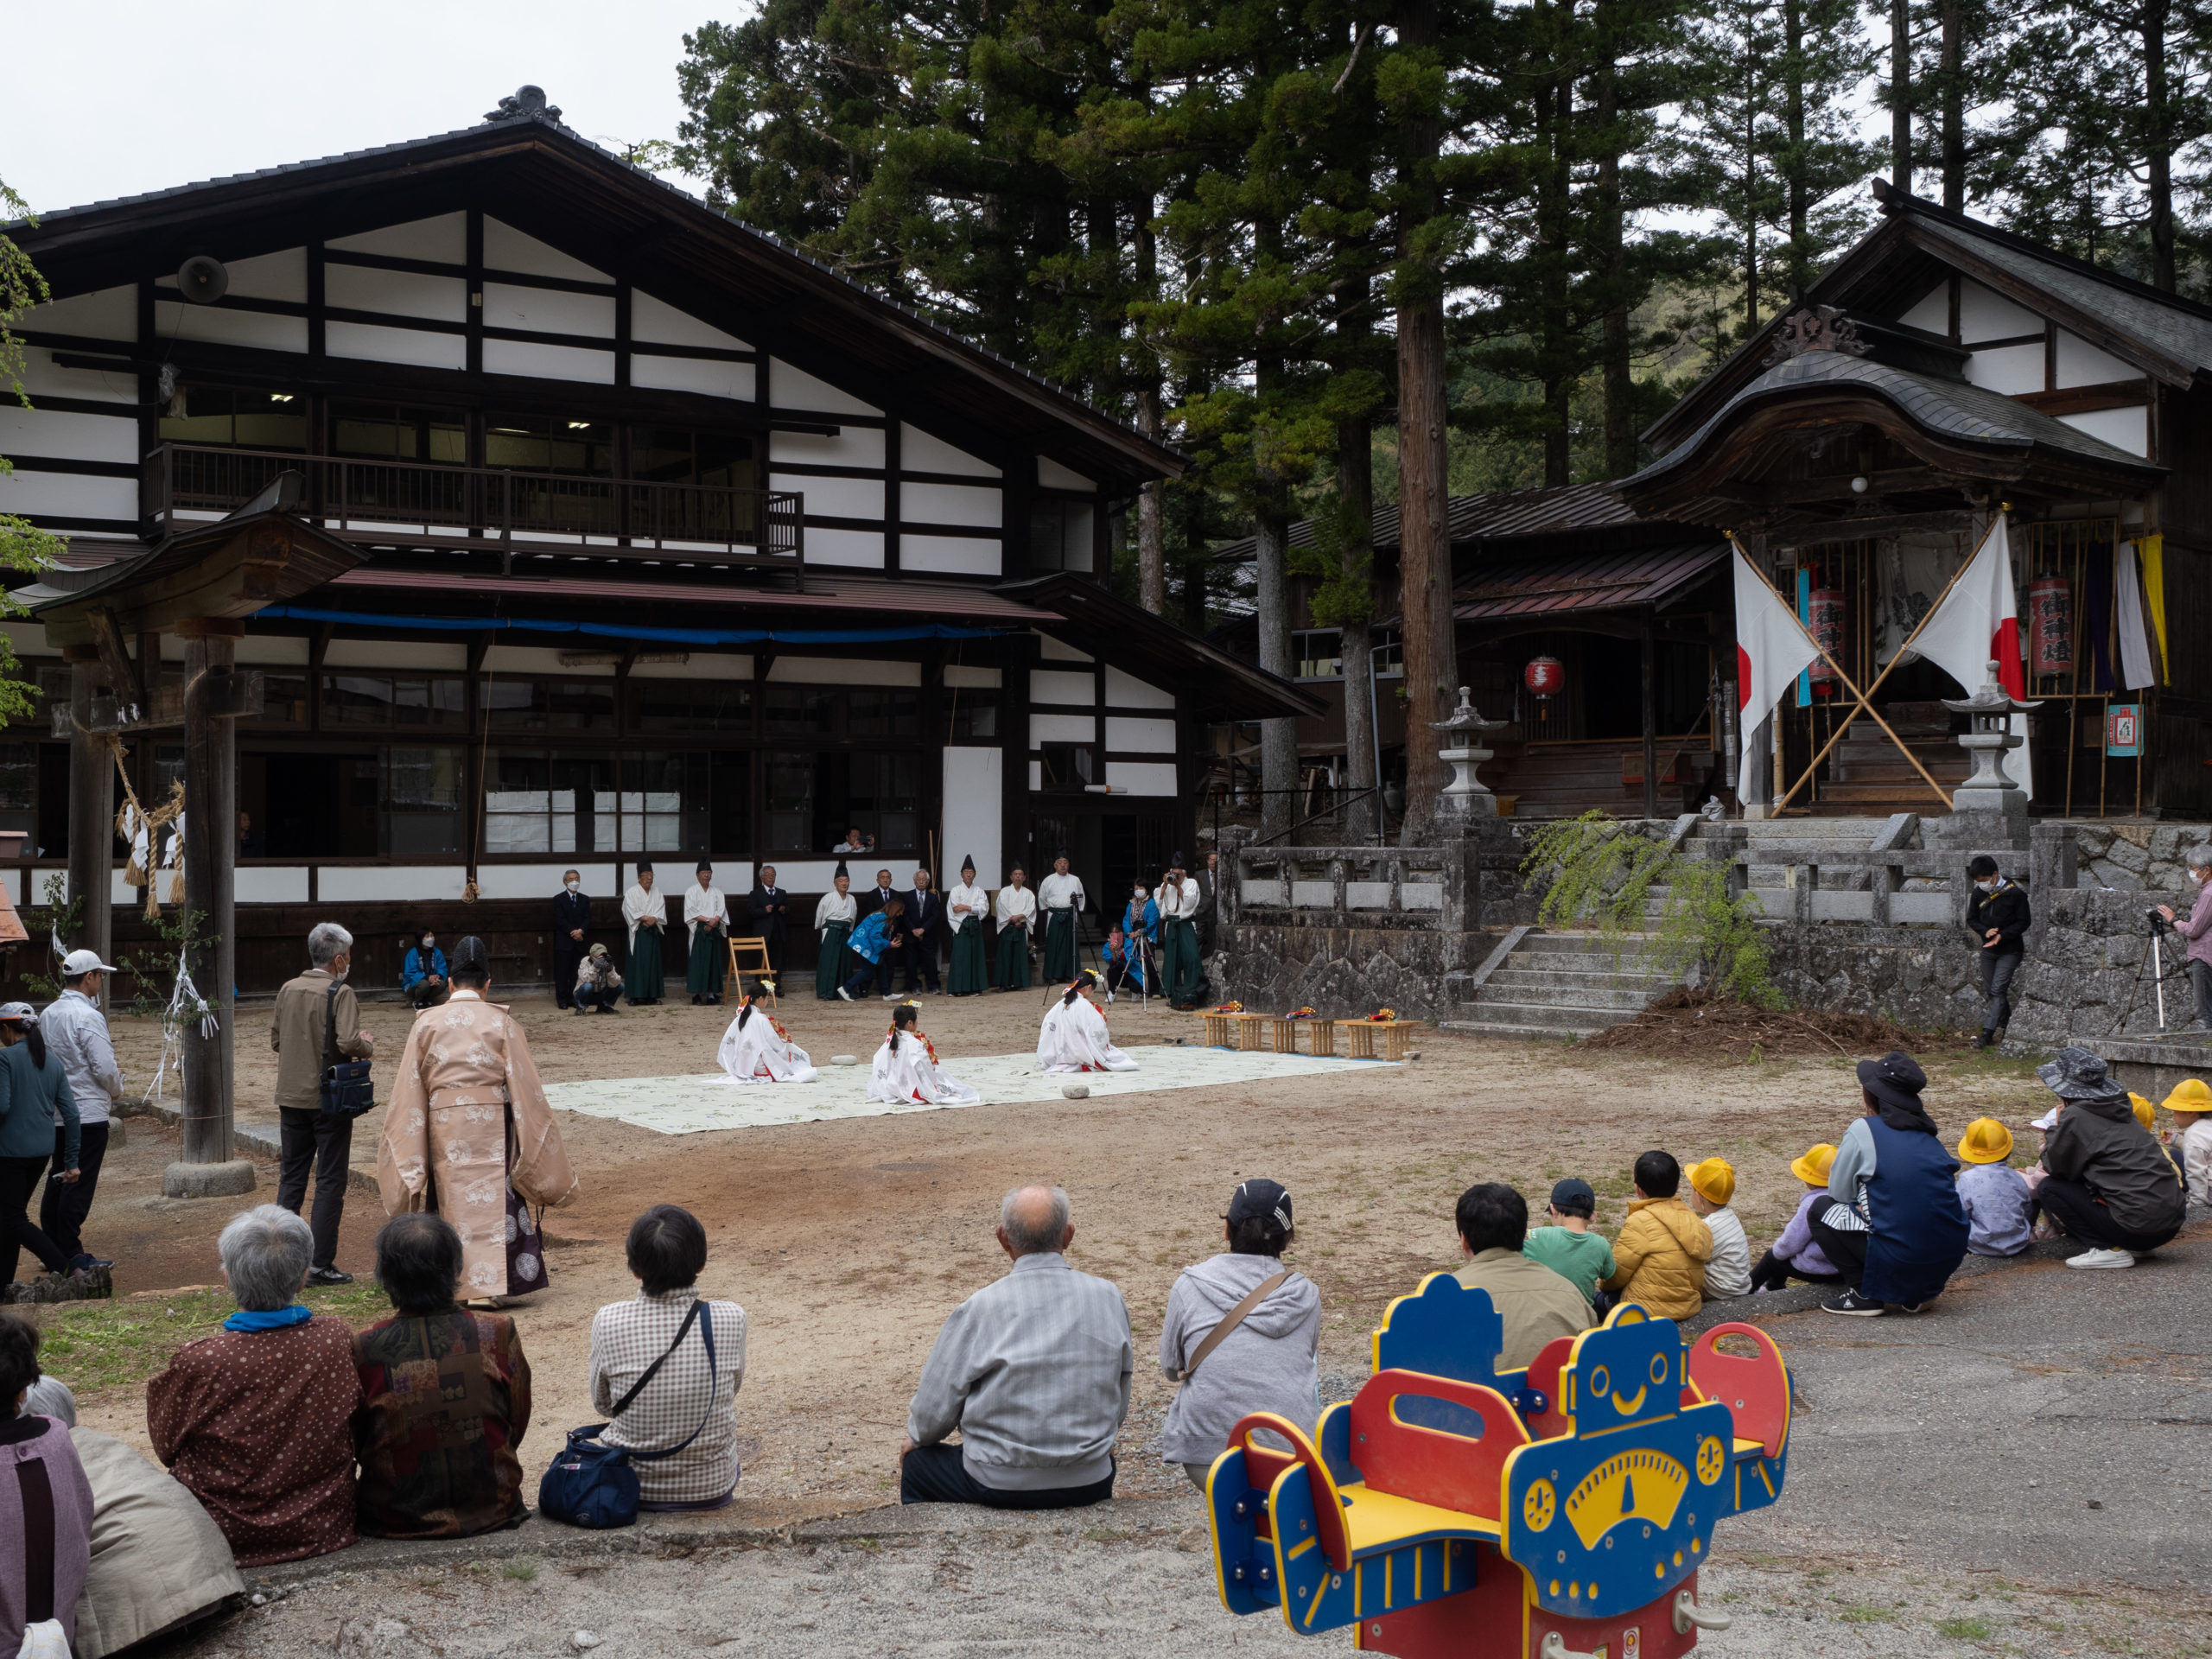 下清内路諏訪神社の春祭りが開催されました